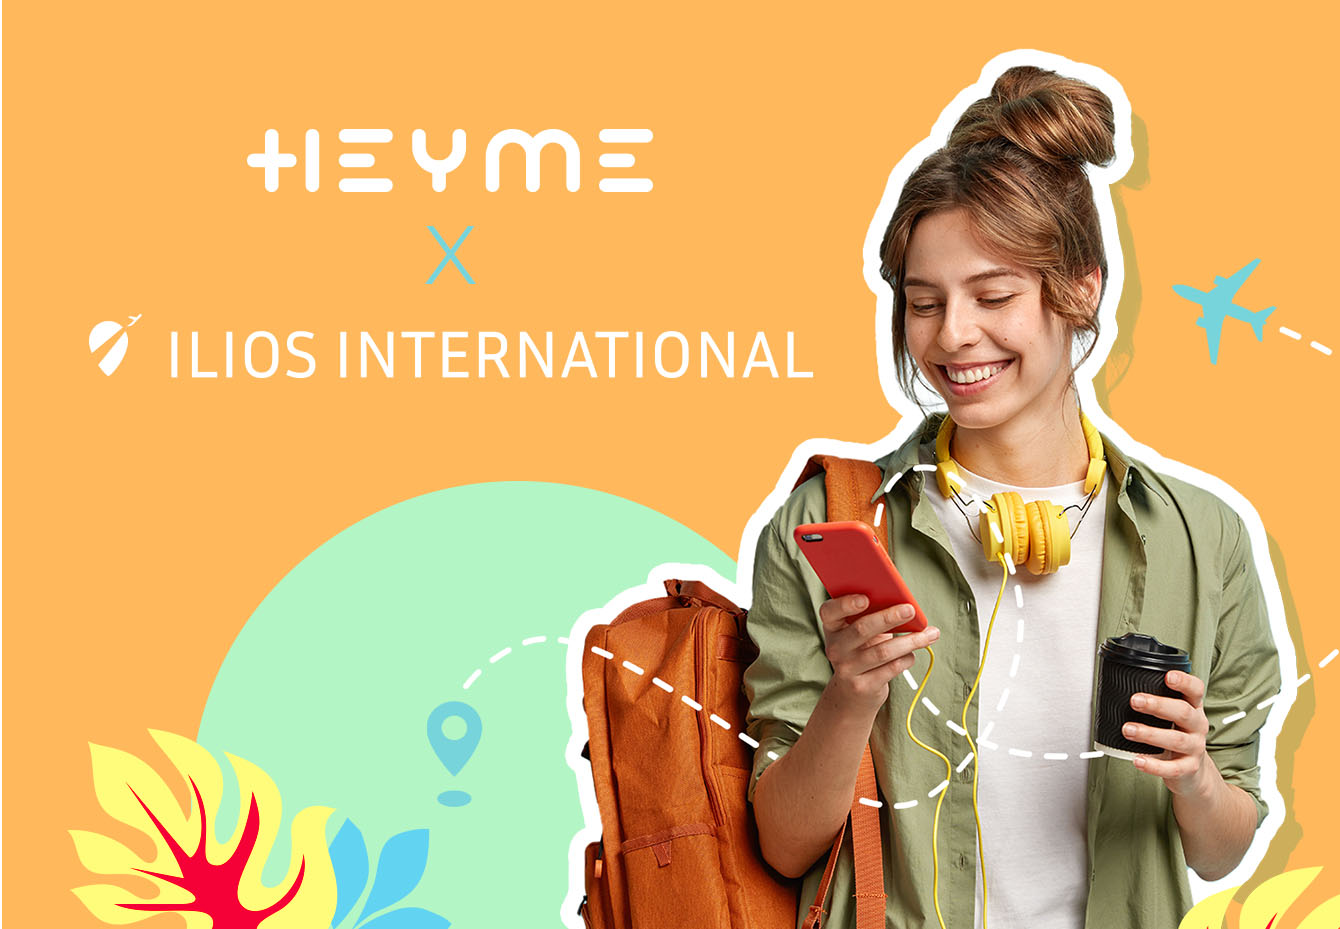 HEYME & Ilios : tes alliés pour des voyages sans tracas - Heyme